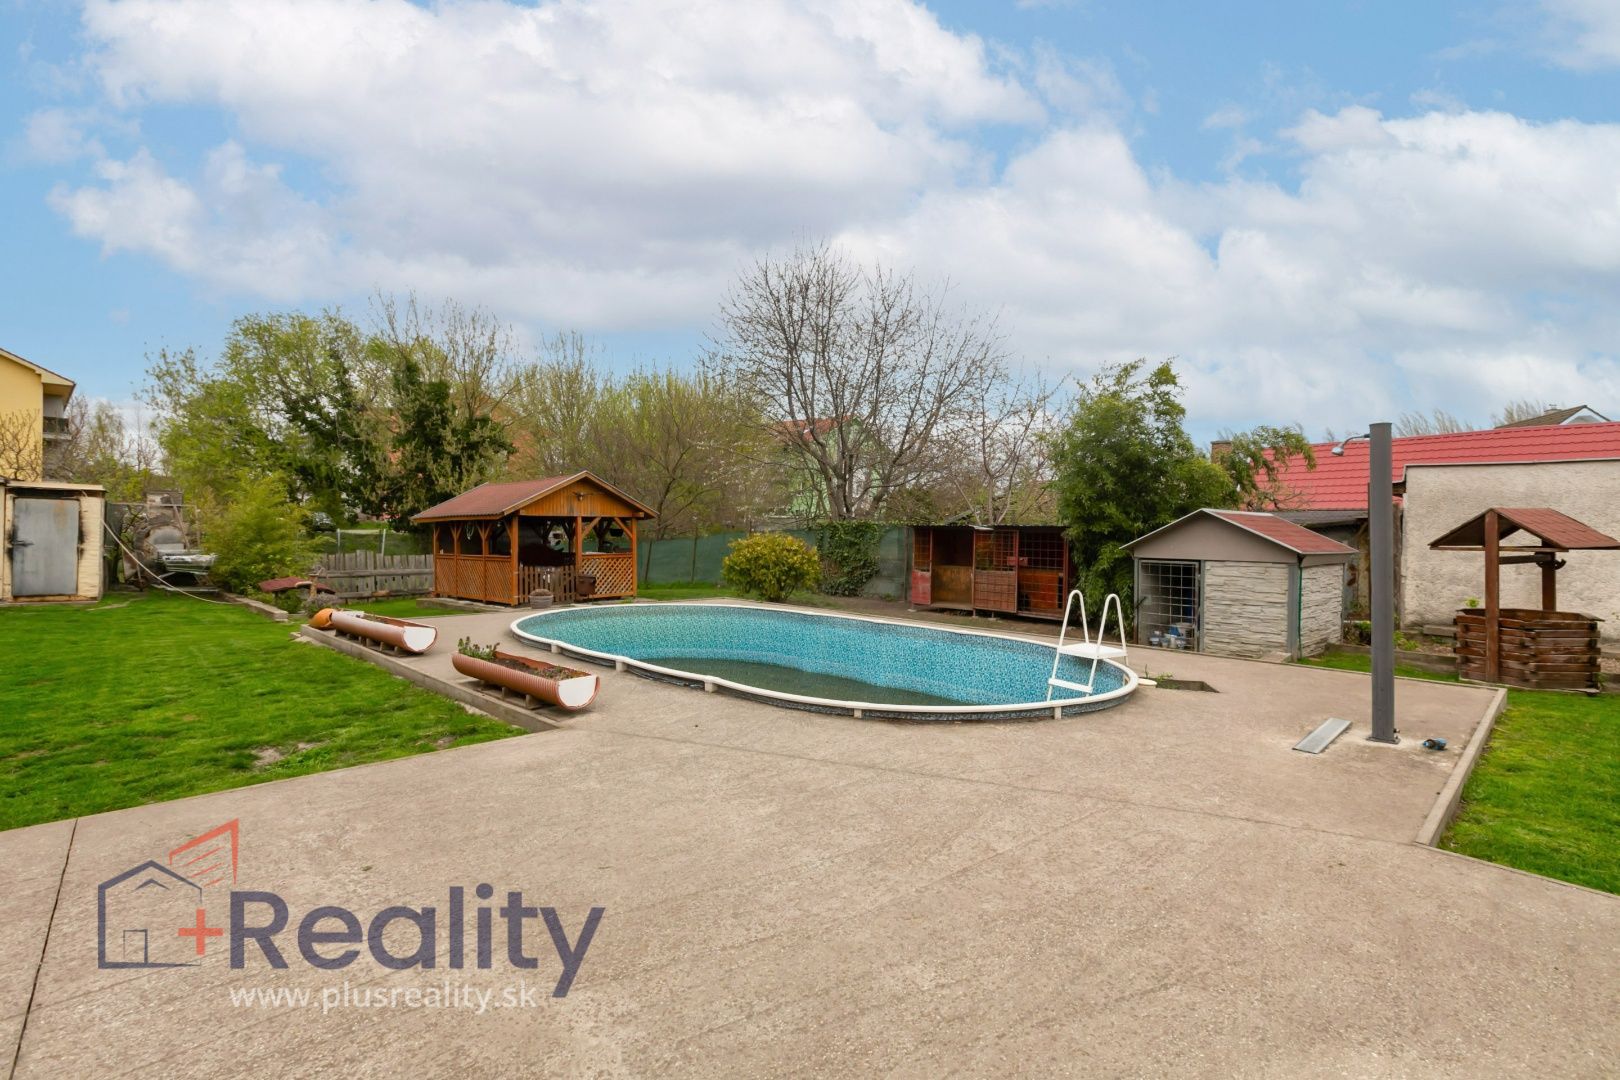 Galéria: PLUS REALITY | Rodinný dom s bazénom, krbom a veľkým pozemkom v meste Dunajská Streda na predaj! 